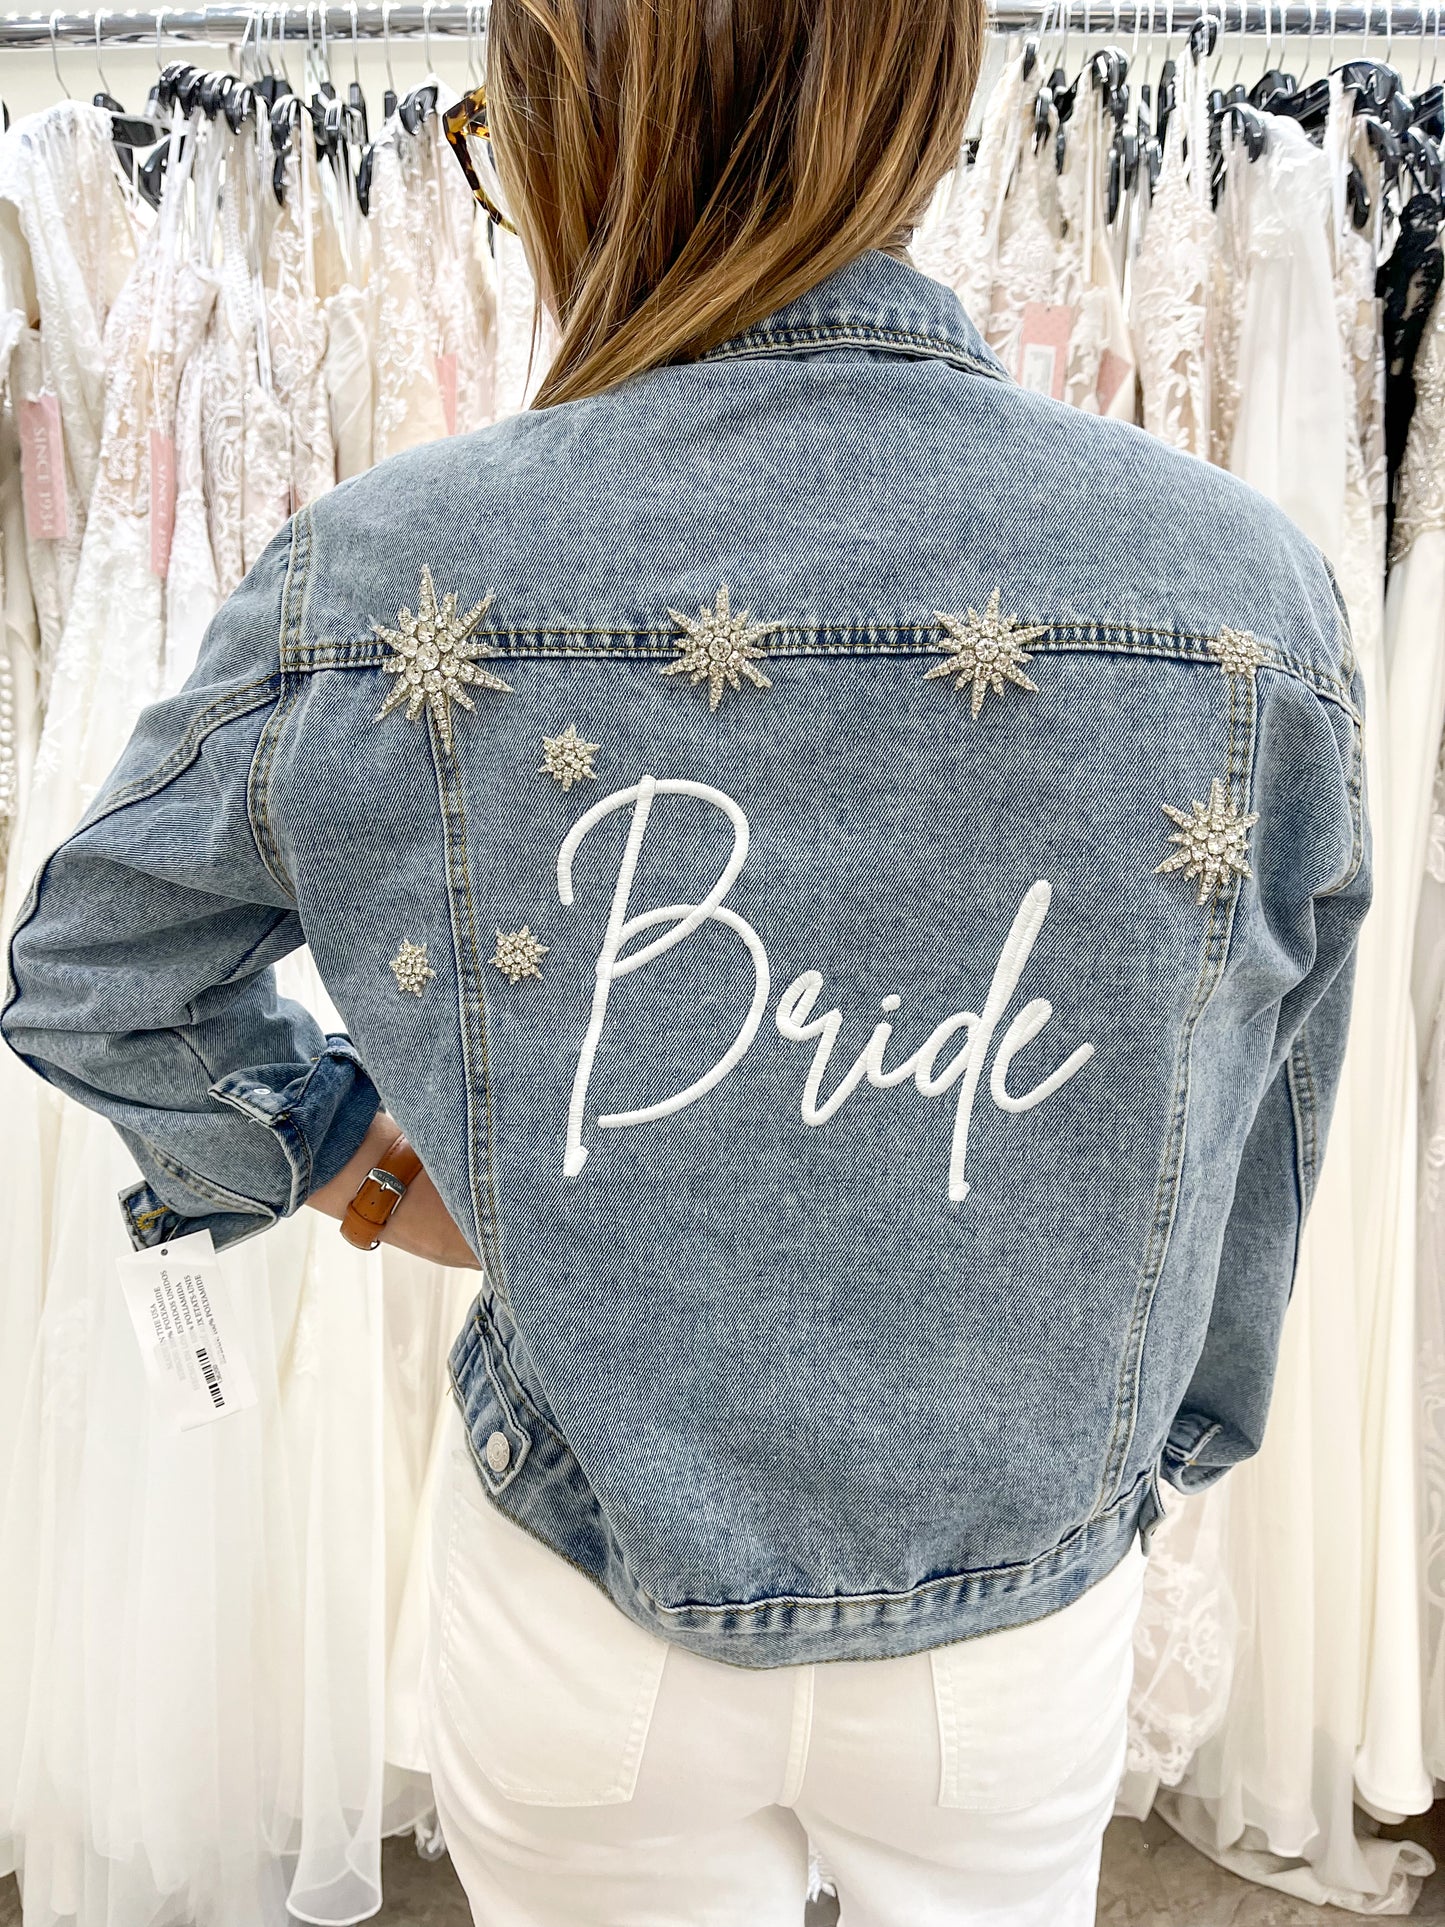 Star Struck Denim Jacket for Bride